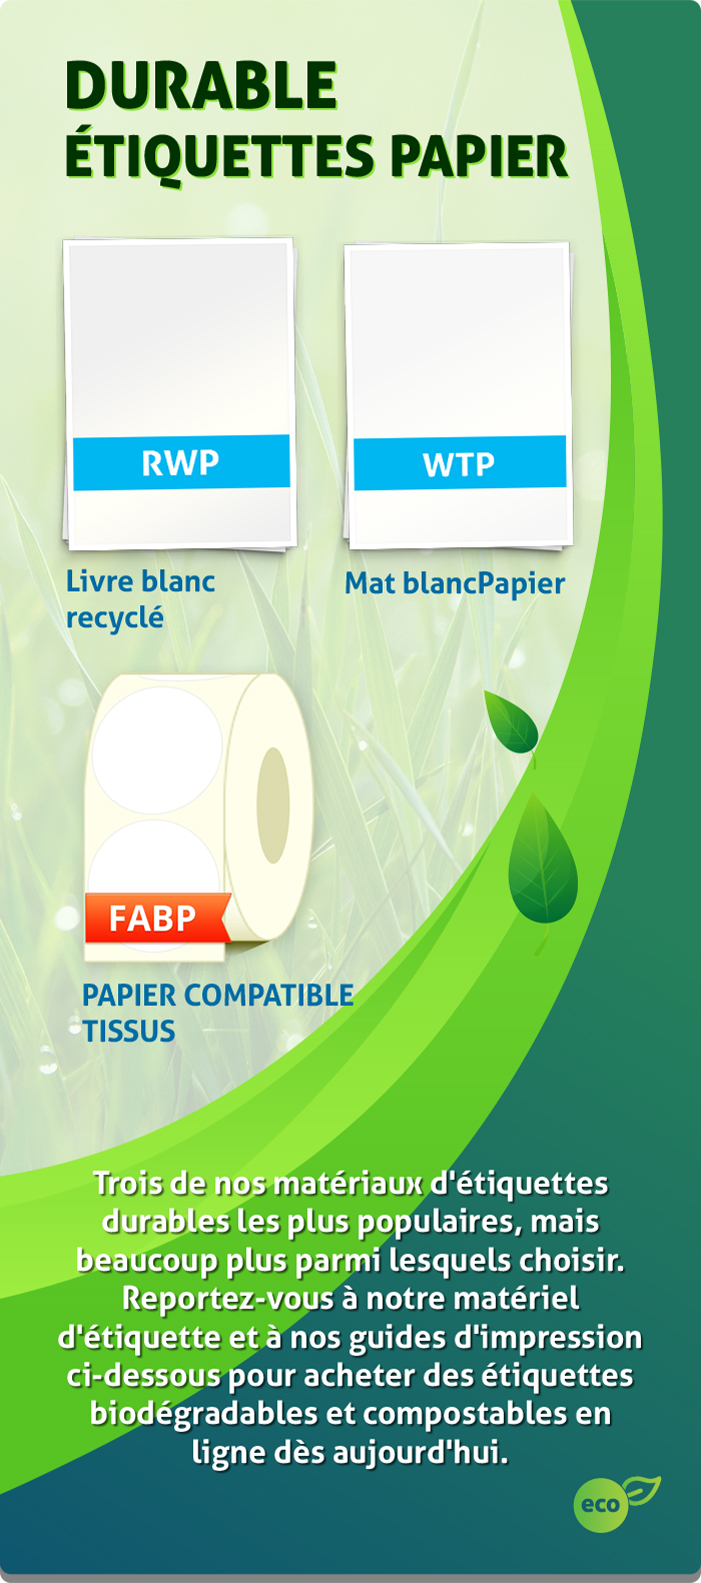 sustainnable-paper-sidebar